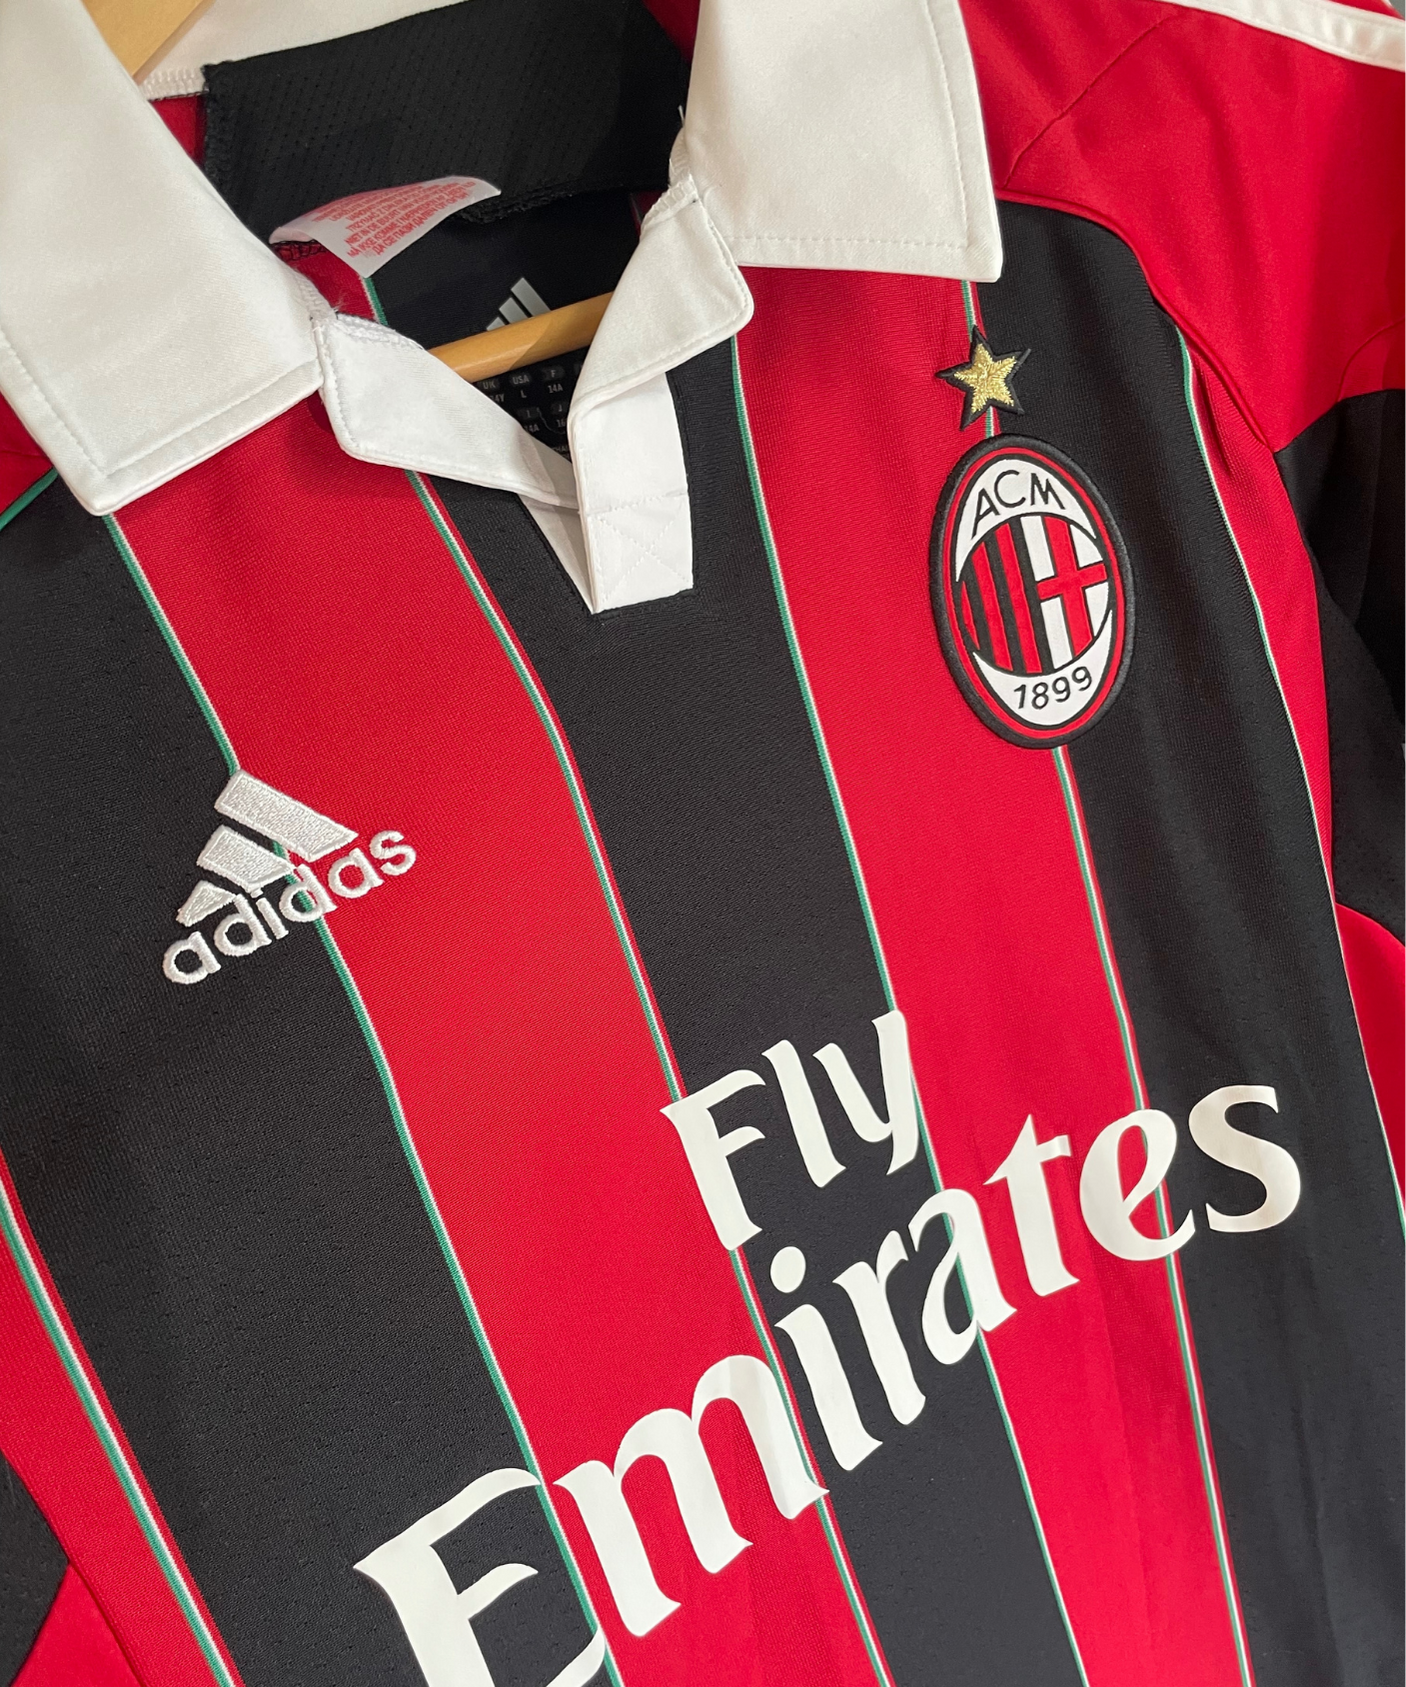 AC Milan 2012/13 Seedorf Home Kit (YXL)